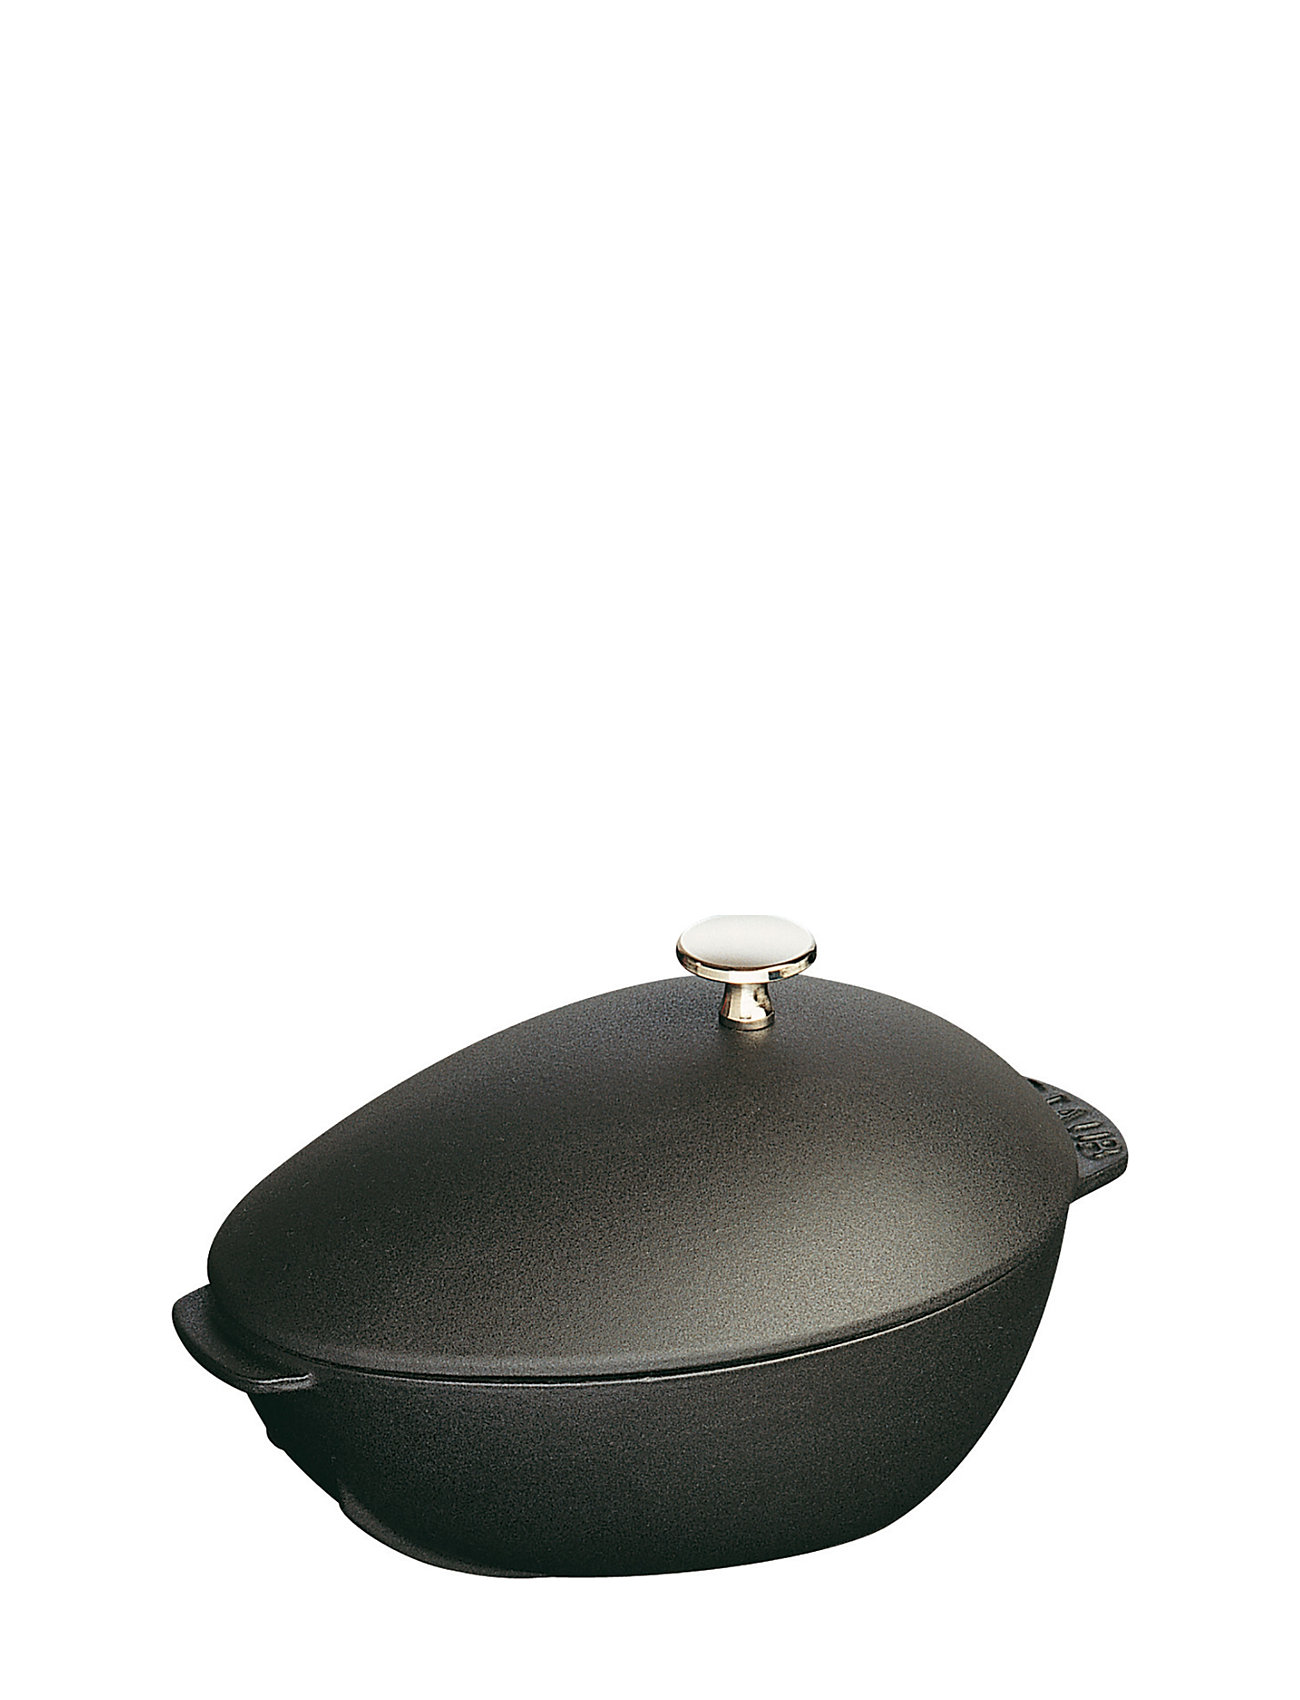 La Cocotte - Mussel Pot Home Kitchen Pots & Pans Casserole Dishes Black STAUB